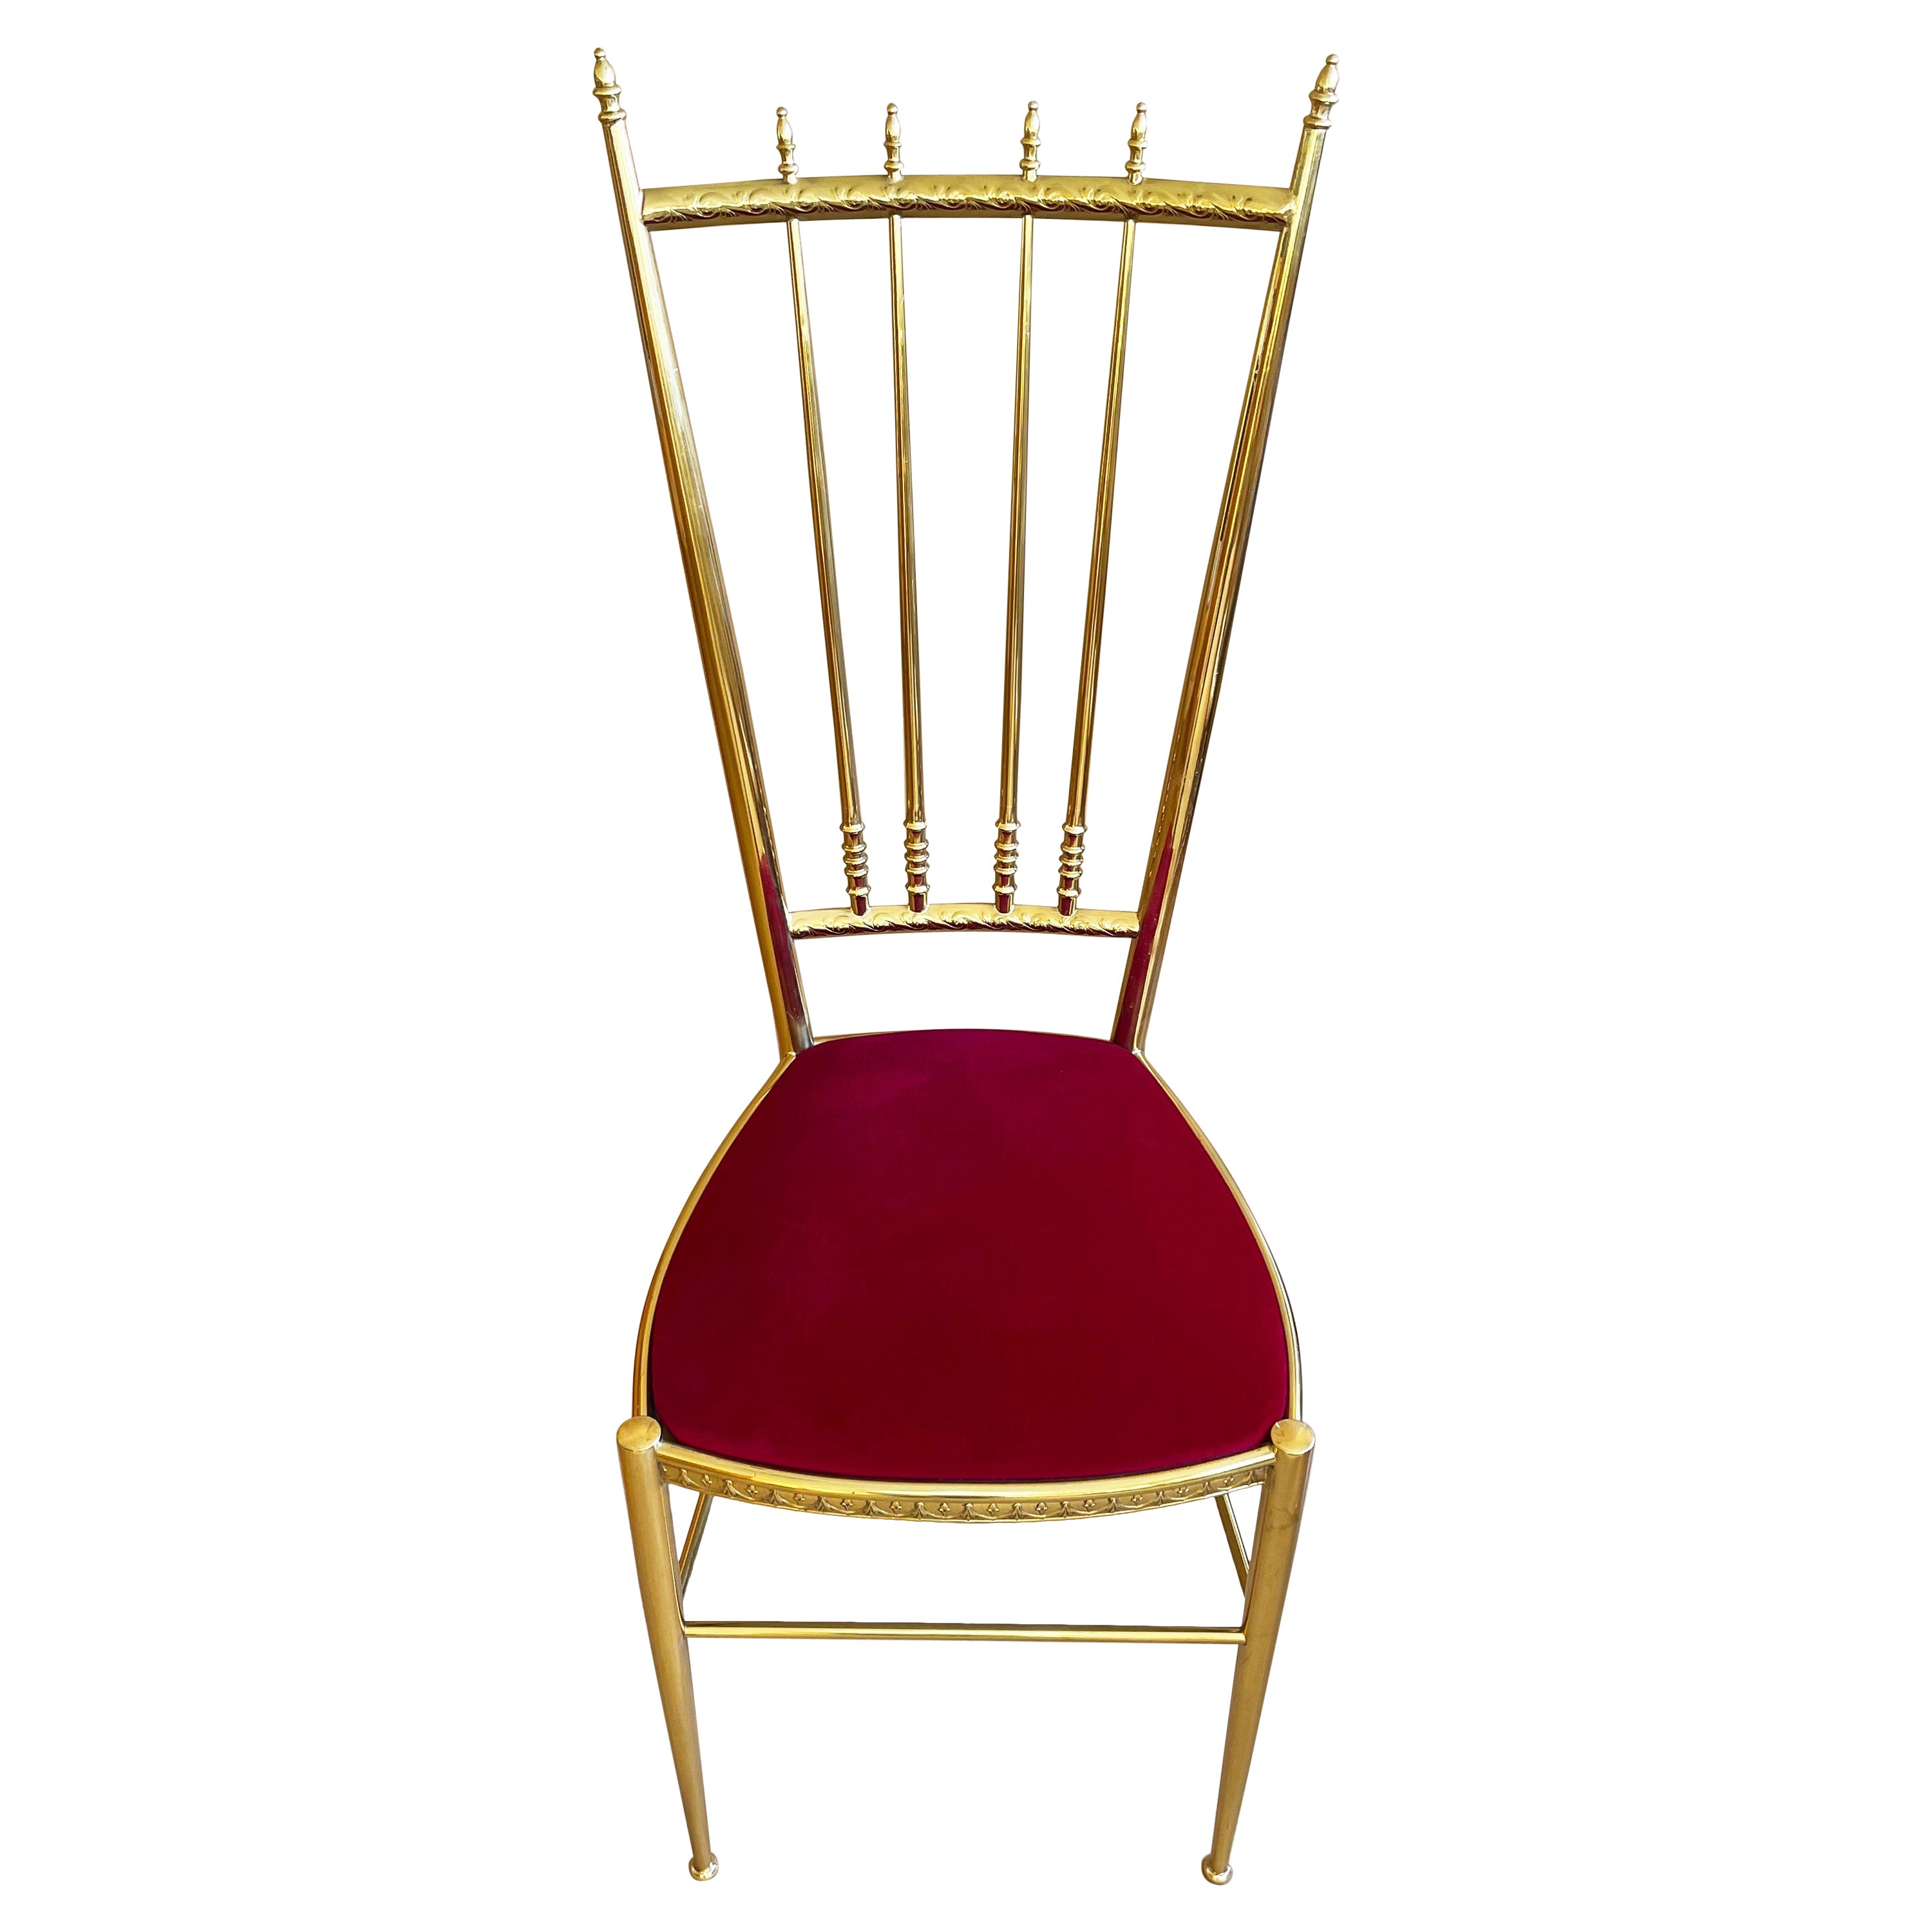 Italienischer Chiavari-Stuhl aus Messing und rotem Samt, 1960er Jahre Italien